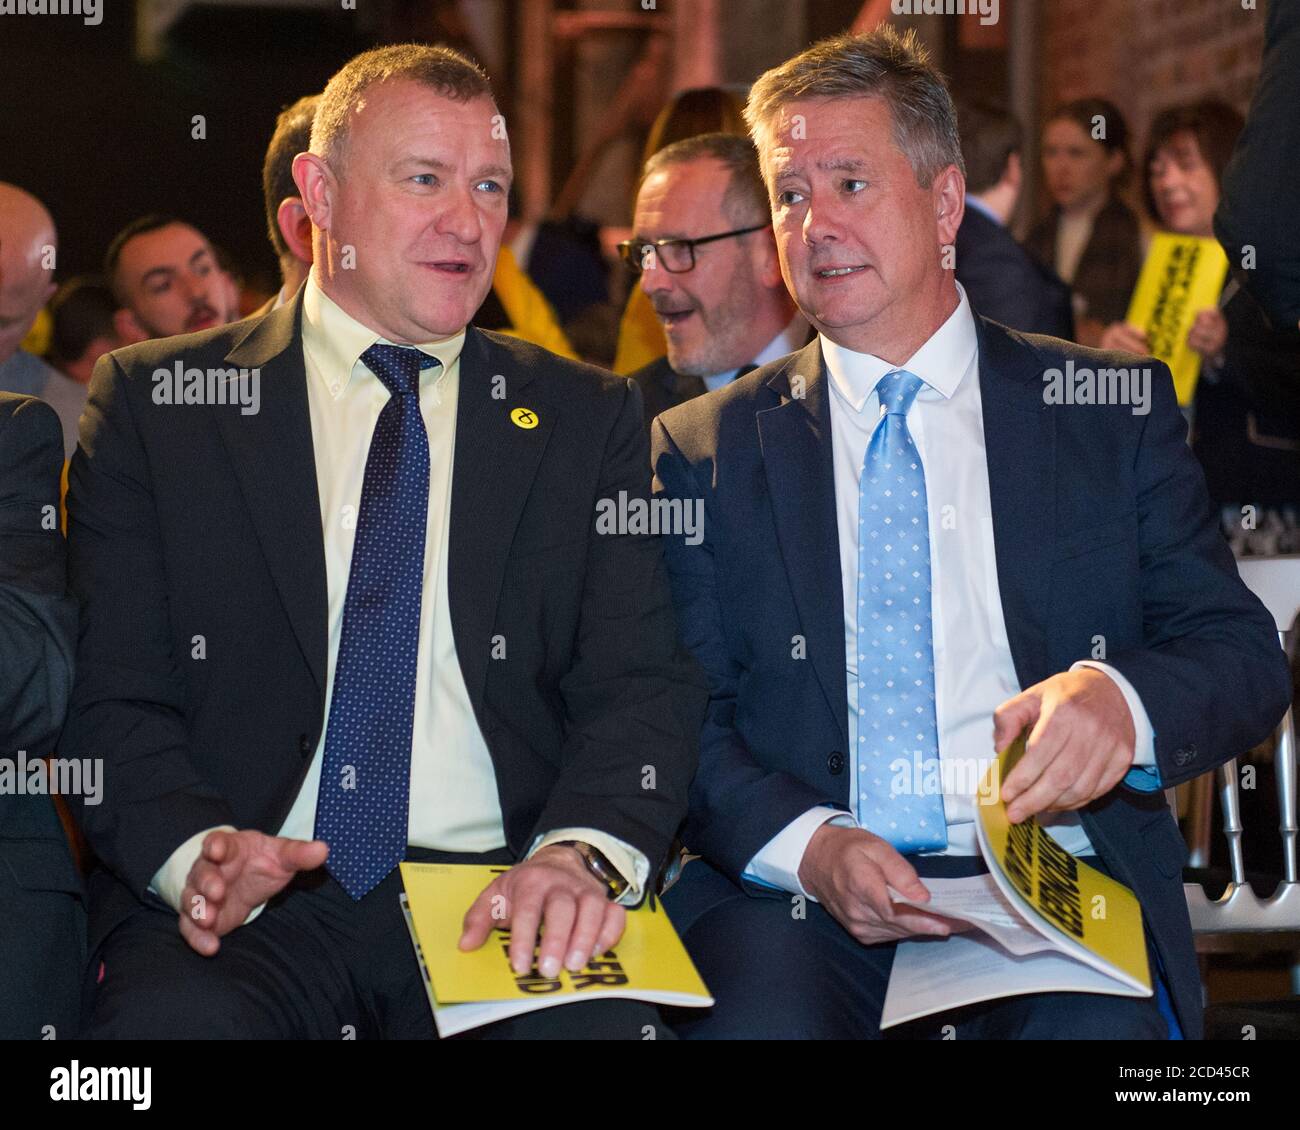 Glasgow, Großbritannien. 27. November 2019. Bild: (Links) Drew Hendry MP; (rechts) Keith Brown MSP. Die offizielle Wahlerklärung der Scottish National Party (SNP) für die Parlamentswahlen am 12. Dezember 2019. Stockfoto